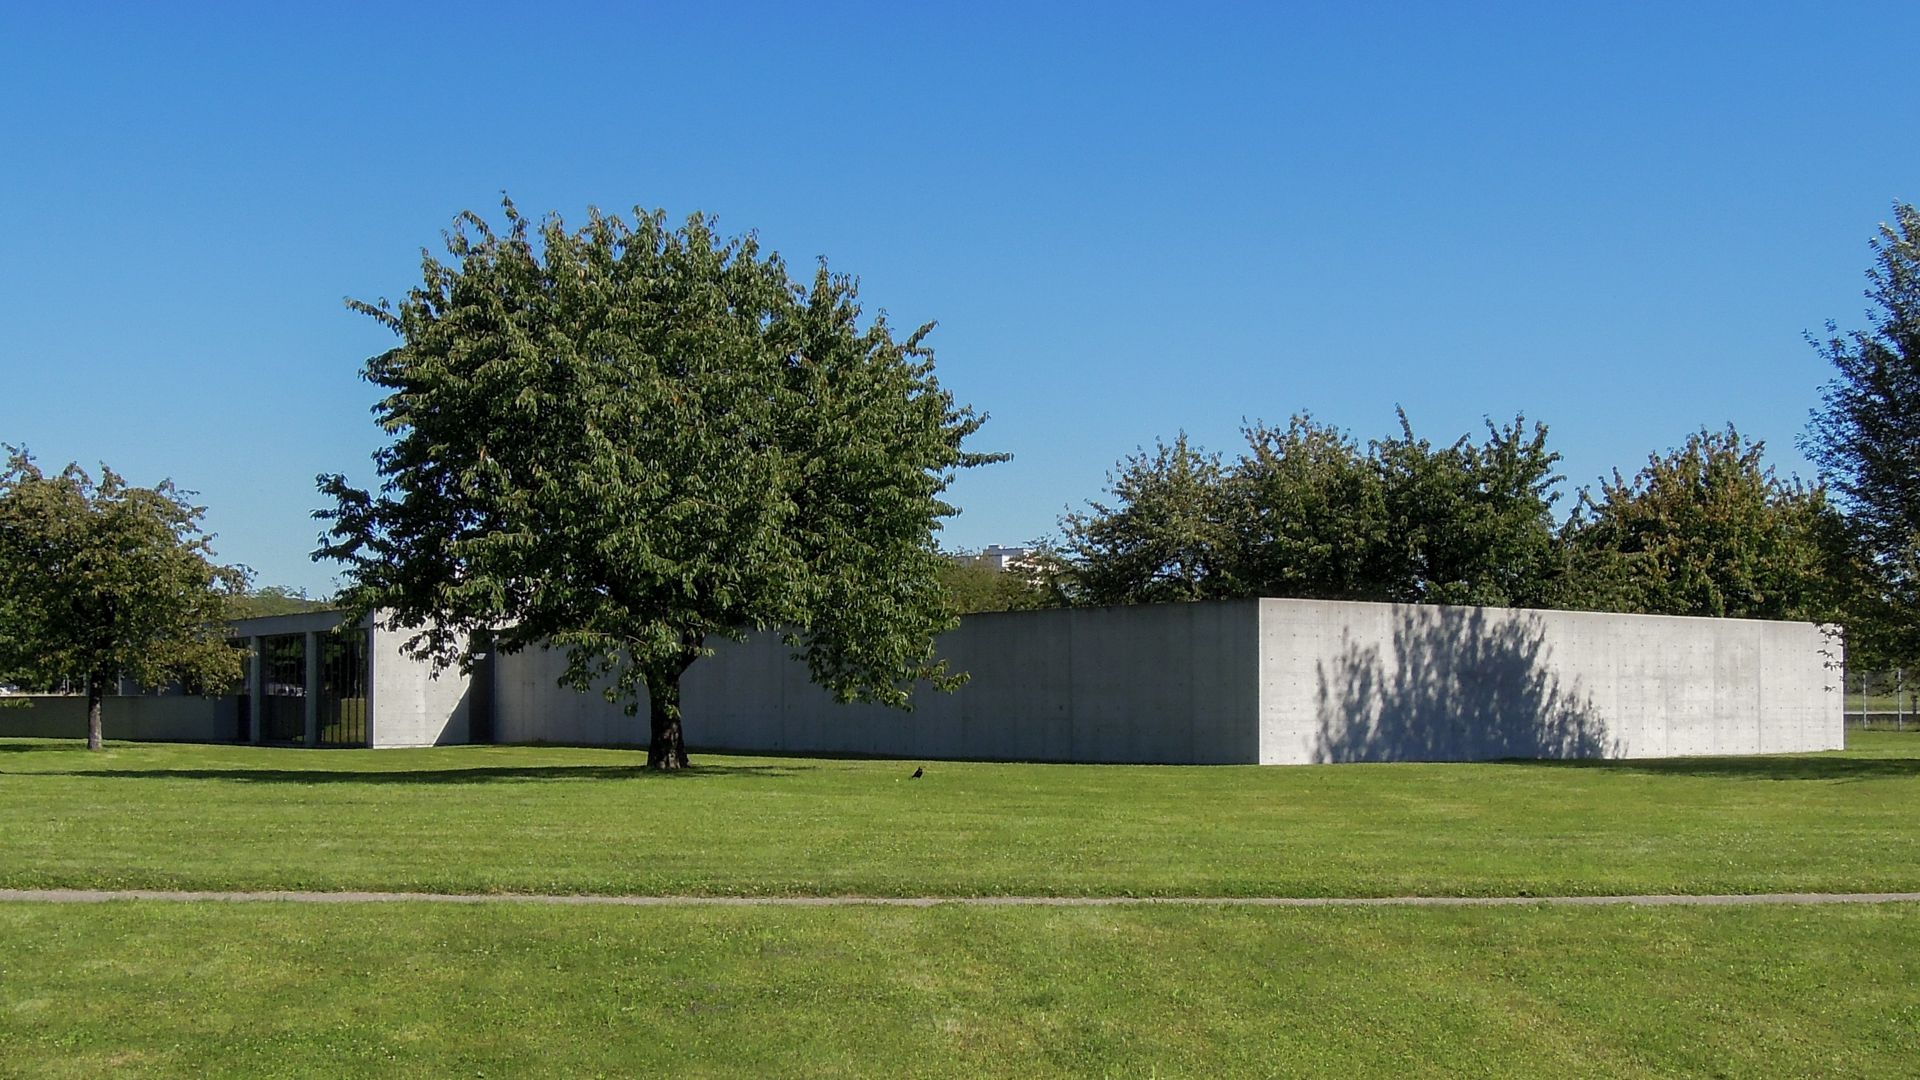 Im Jahr 1993 entstand mit dem Konferenzpavillon von Tadao Ando auf dem Vitra-Campus in Weil am Rhein das erste Bauwerk des Architekten ausserhalb Japans. 